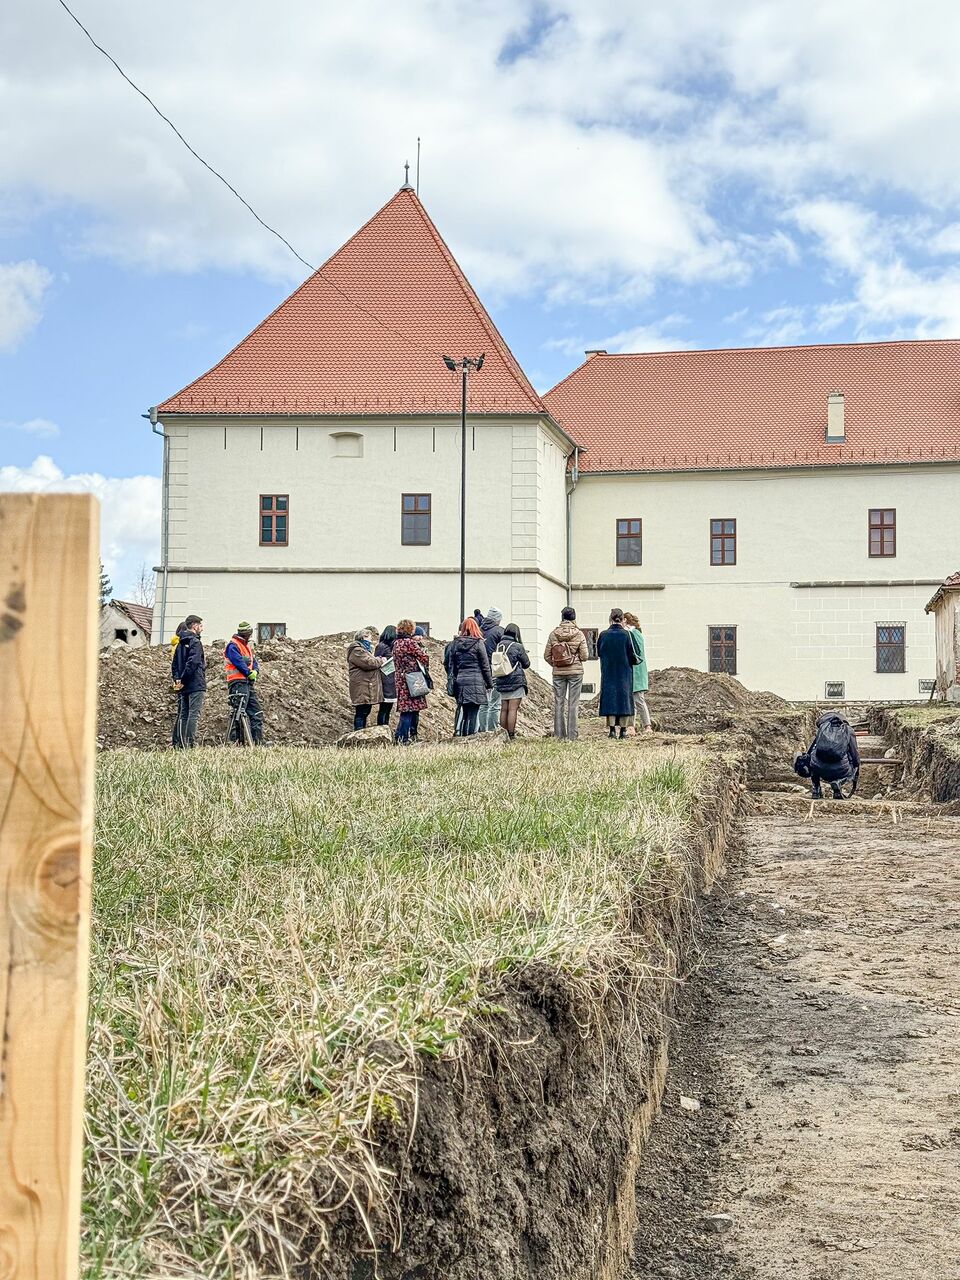 Régészeti ásatások a Mikó-vár nyugati és északi oldalán: a korábbi századok várárok- és sáncrendszerét, a külső bástyákat kutatják több szelvényben. Forrás: Csíkszereda Városháza/Facebook
